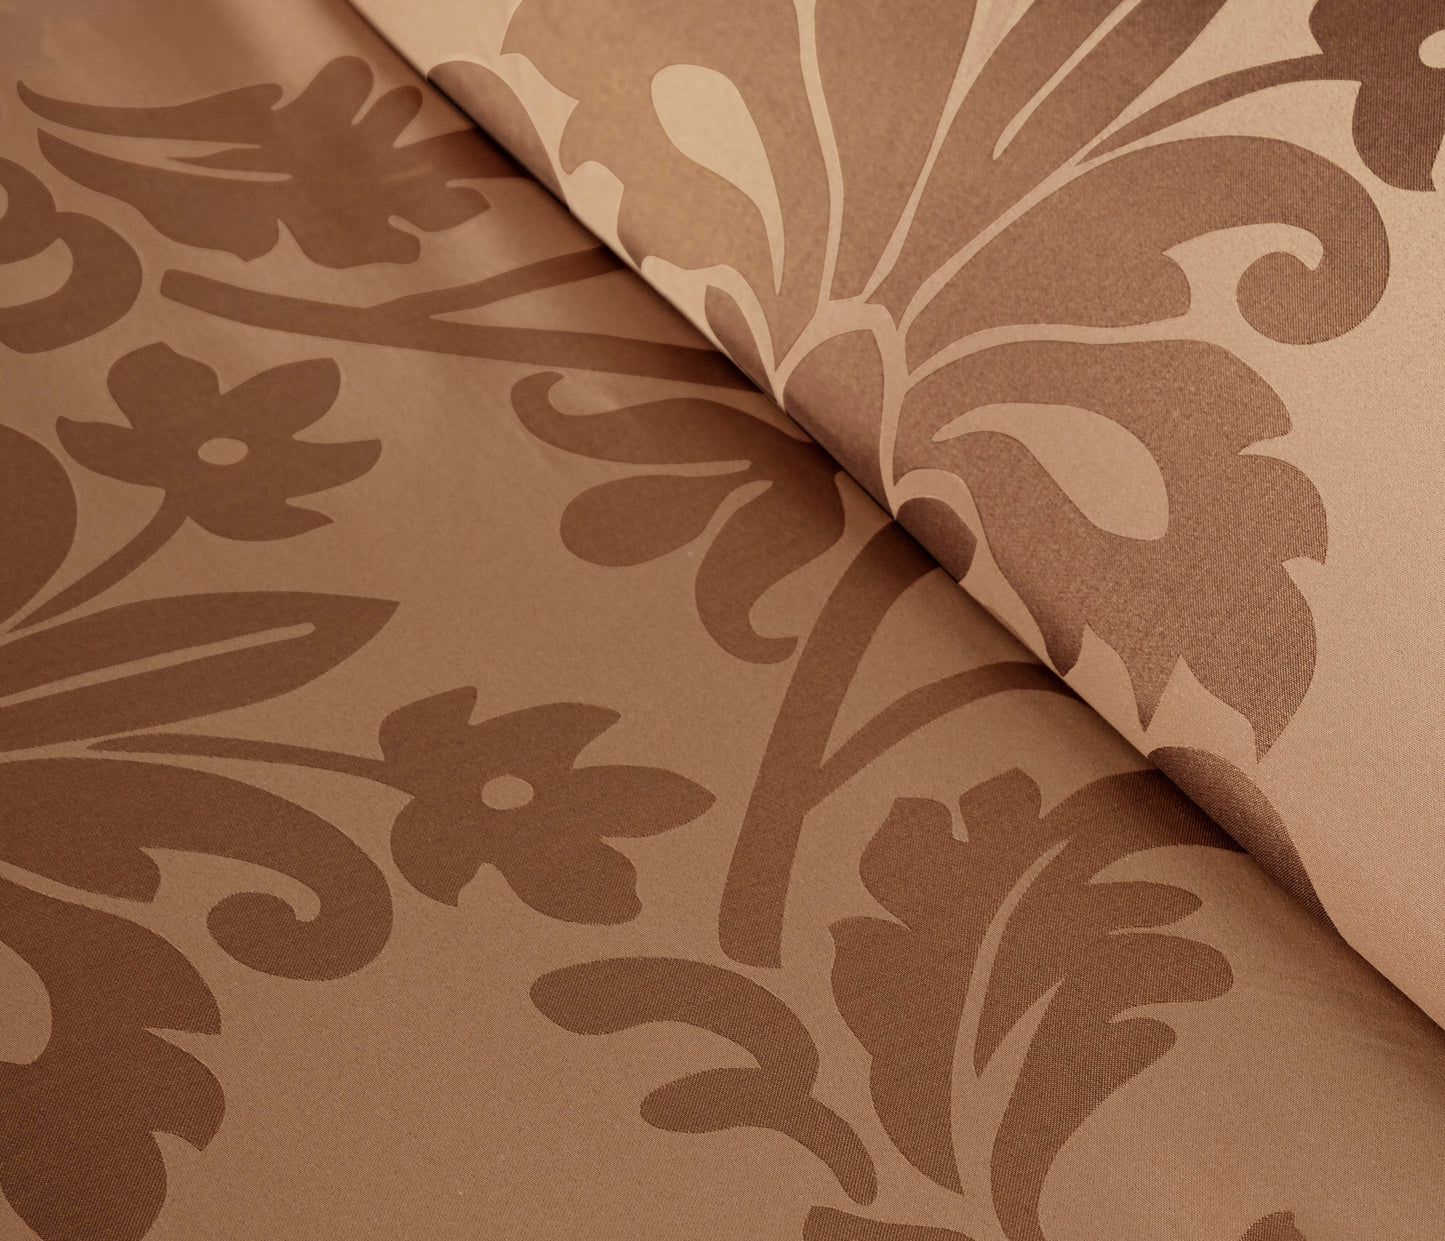 Royale 7-Piece Jacquard Woven Floral Comforter Set